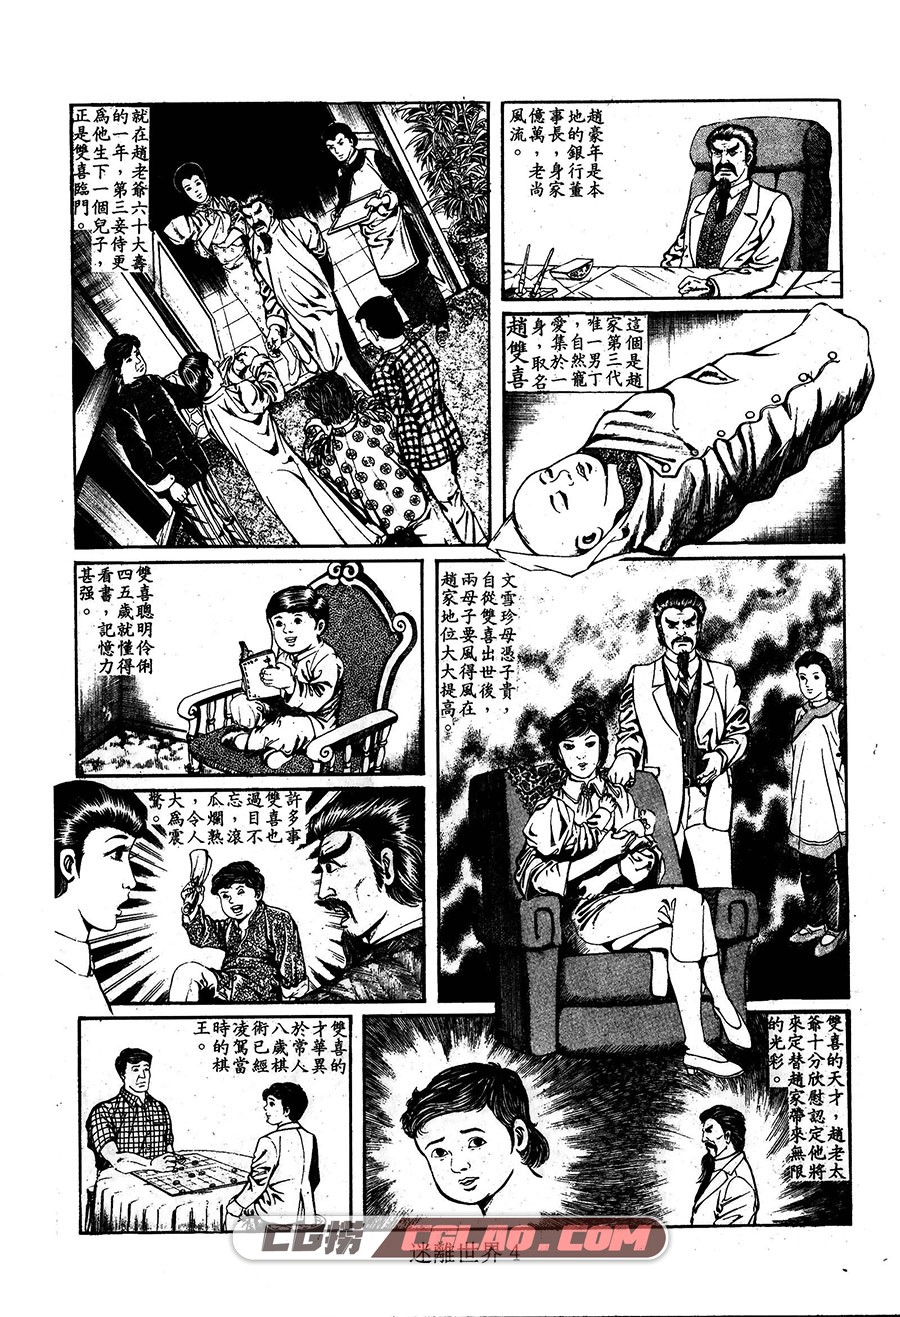 迷离世界 上官小威 1-2册 全集漫画下载 百度网盘,04.jpg